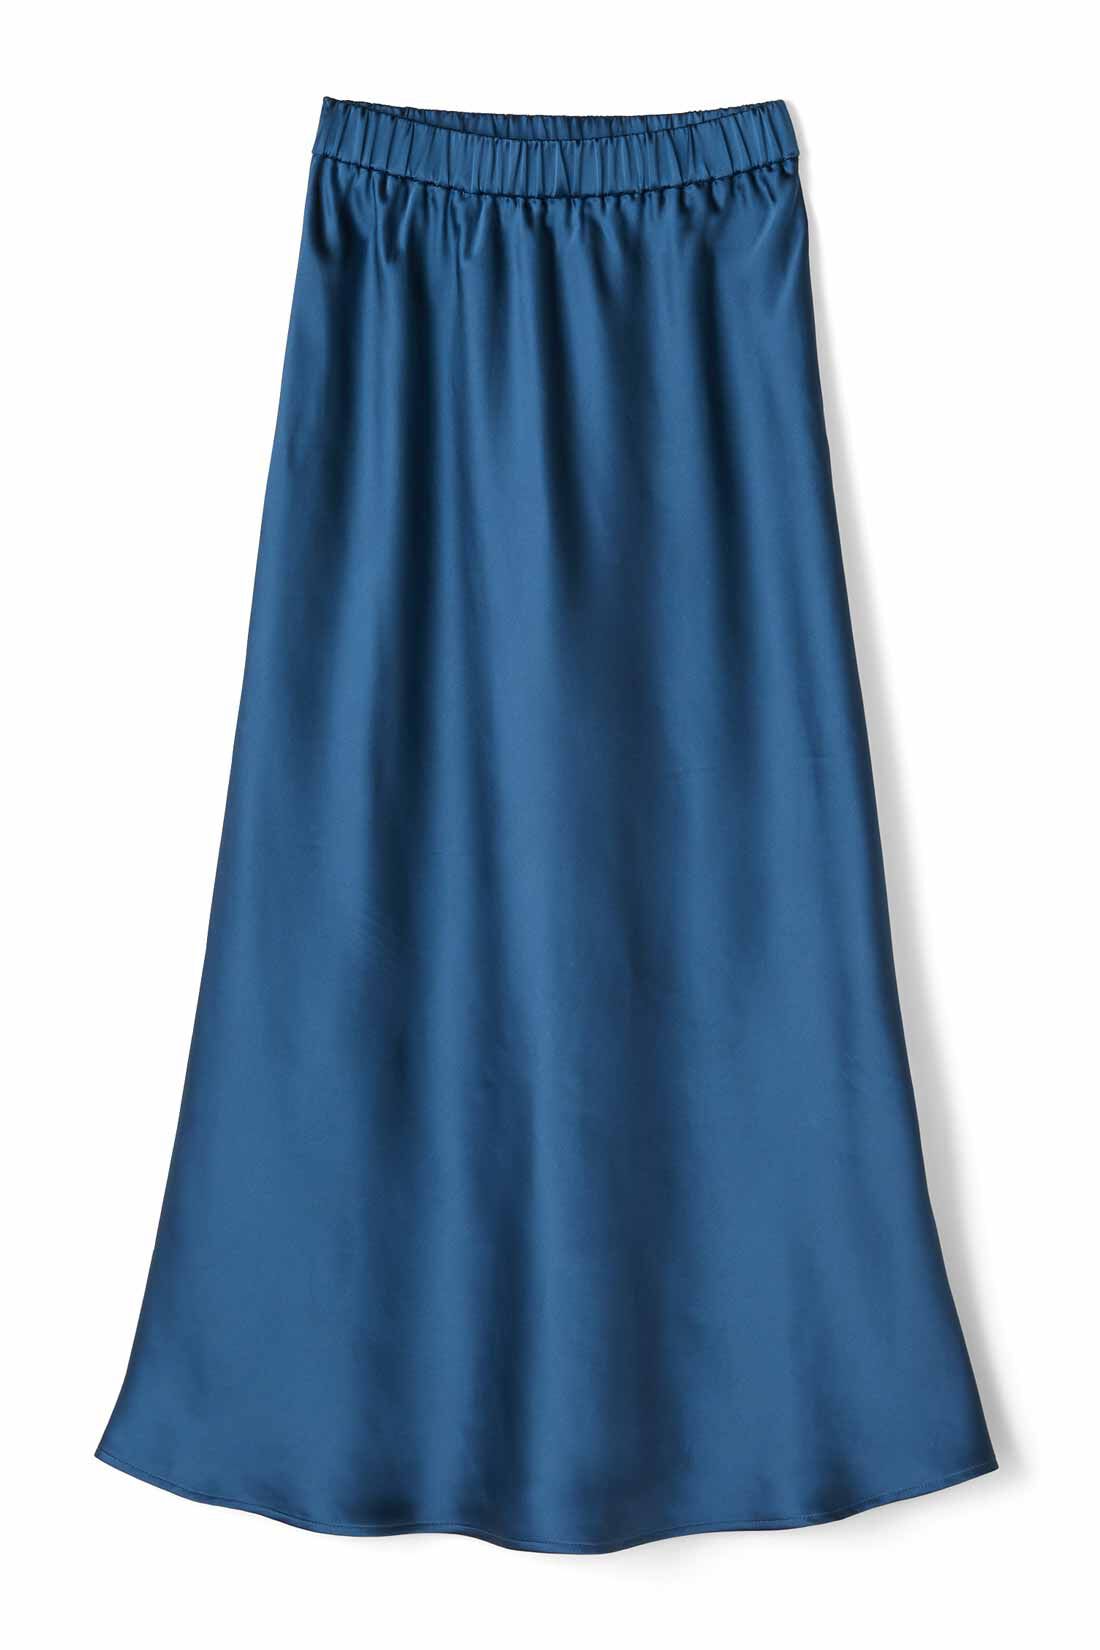 WEB限定お買い得商品|IEDIT[イディット]　サテンの光沢が美しいセミサーキュラースカート〈ディープブルー〉|〈ディープブルー〉